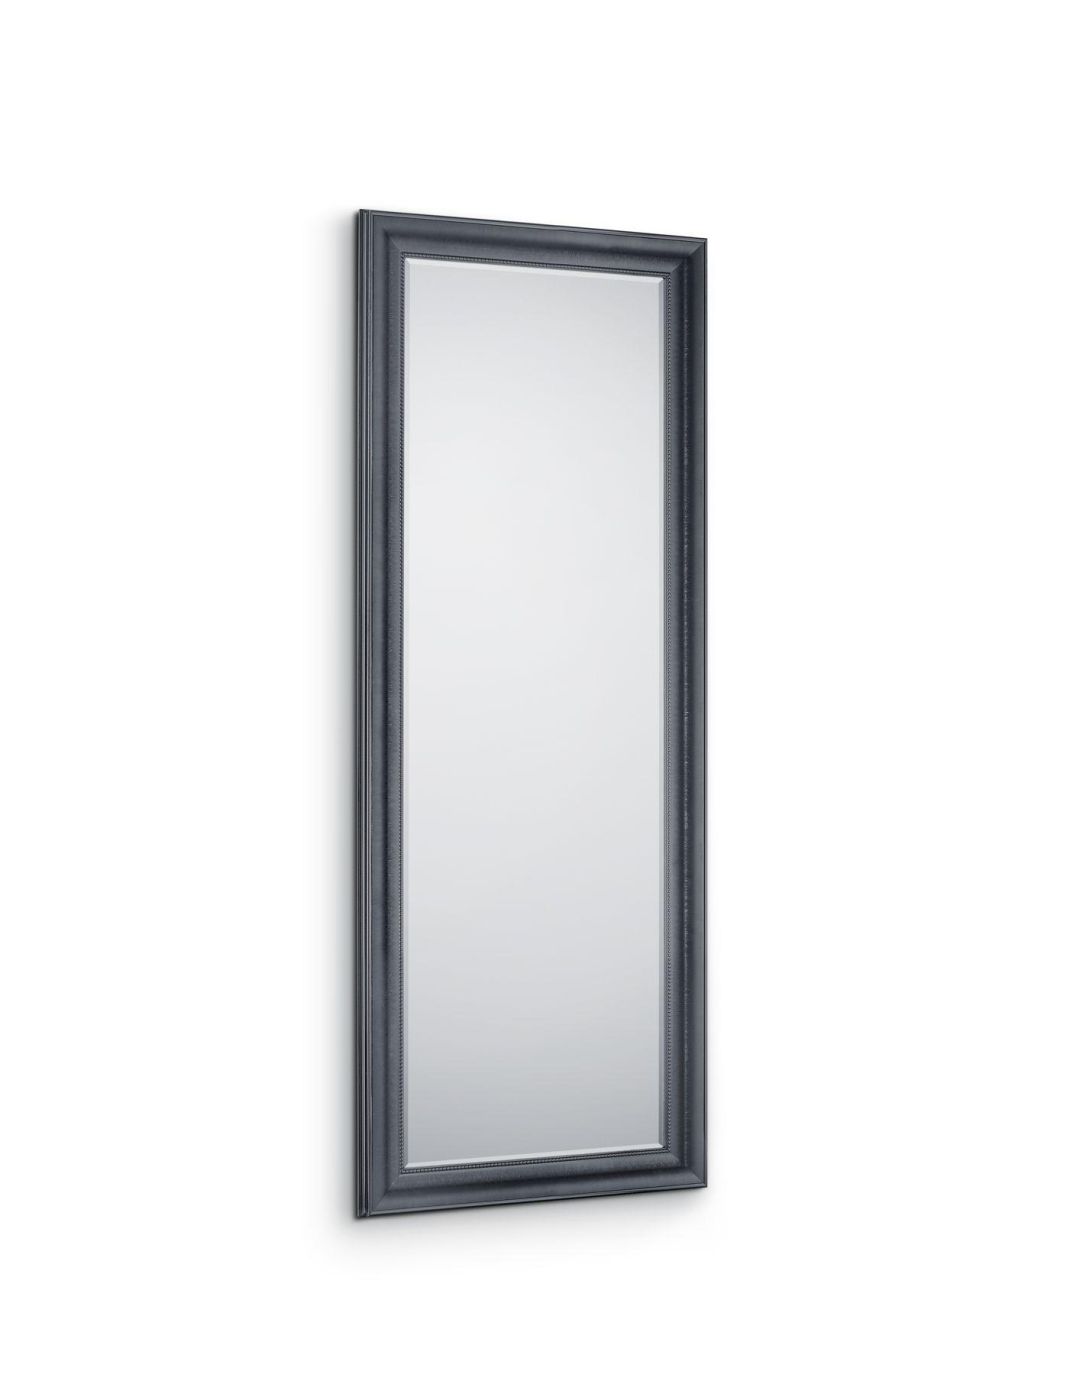 Rahmenspiegel MIA, schwarz, 60x160 cm